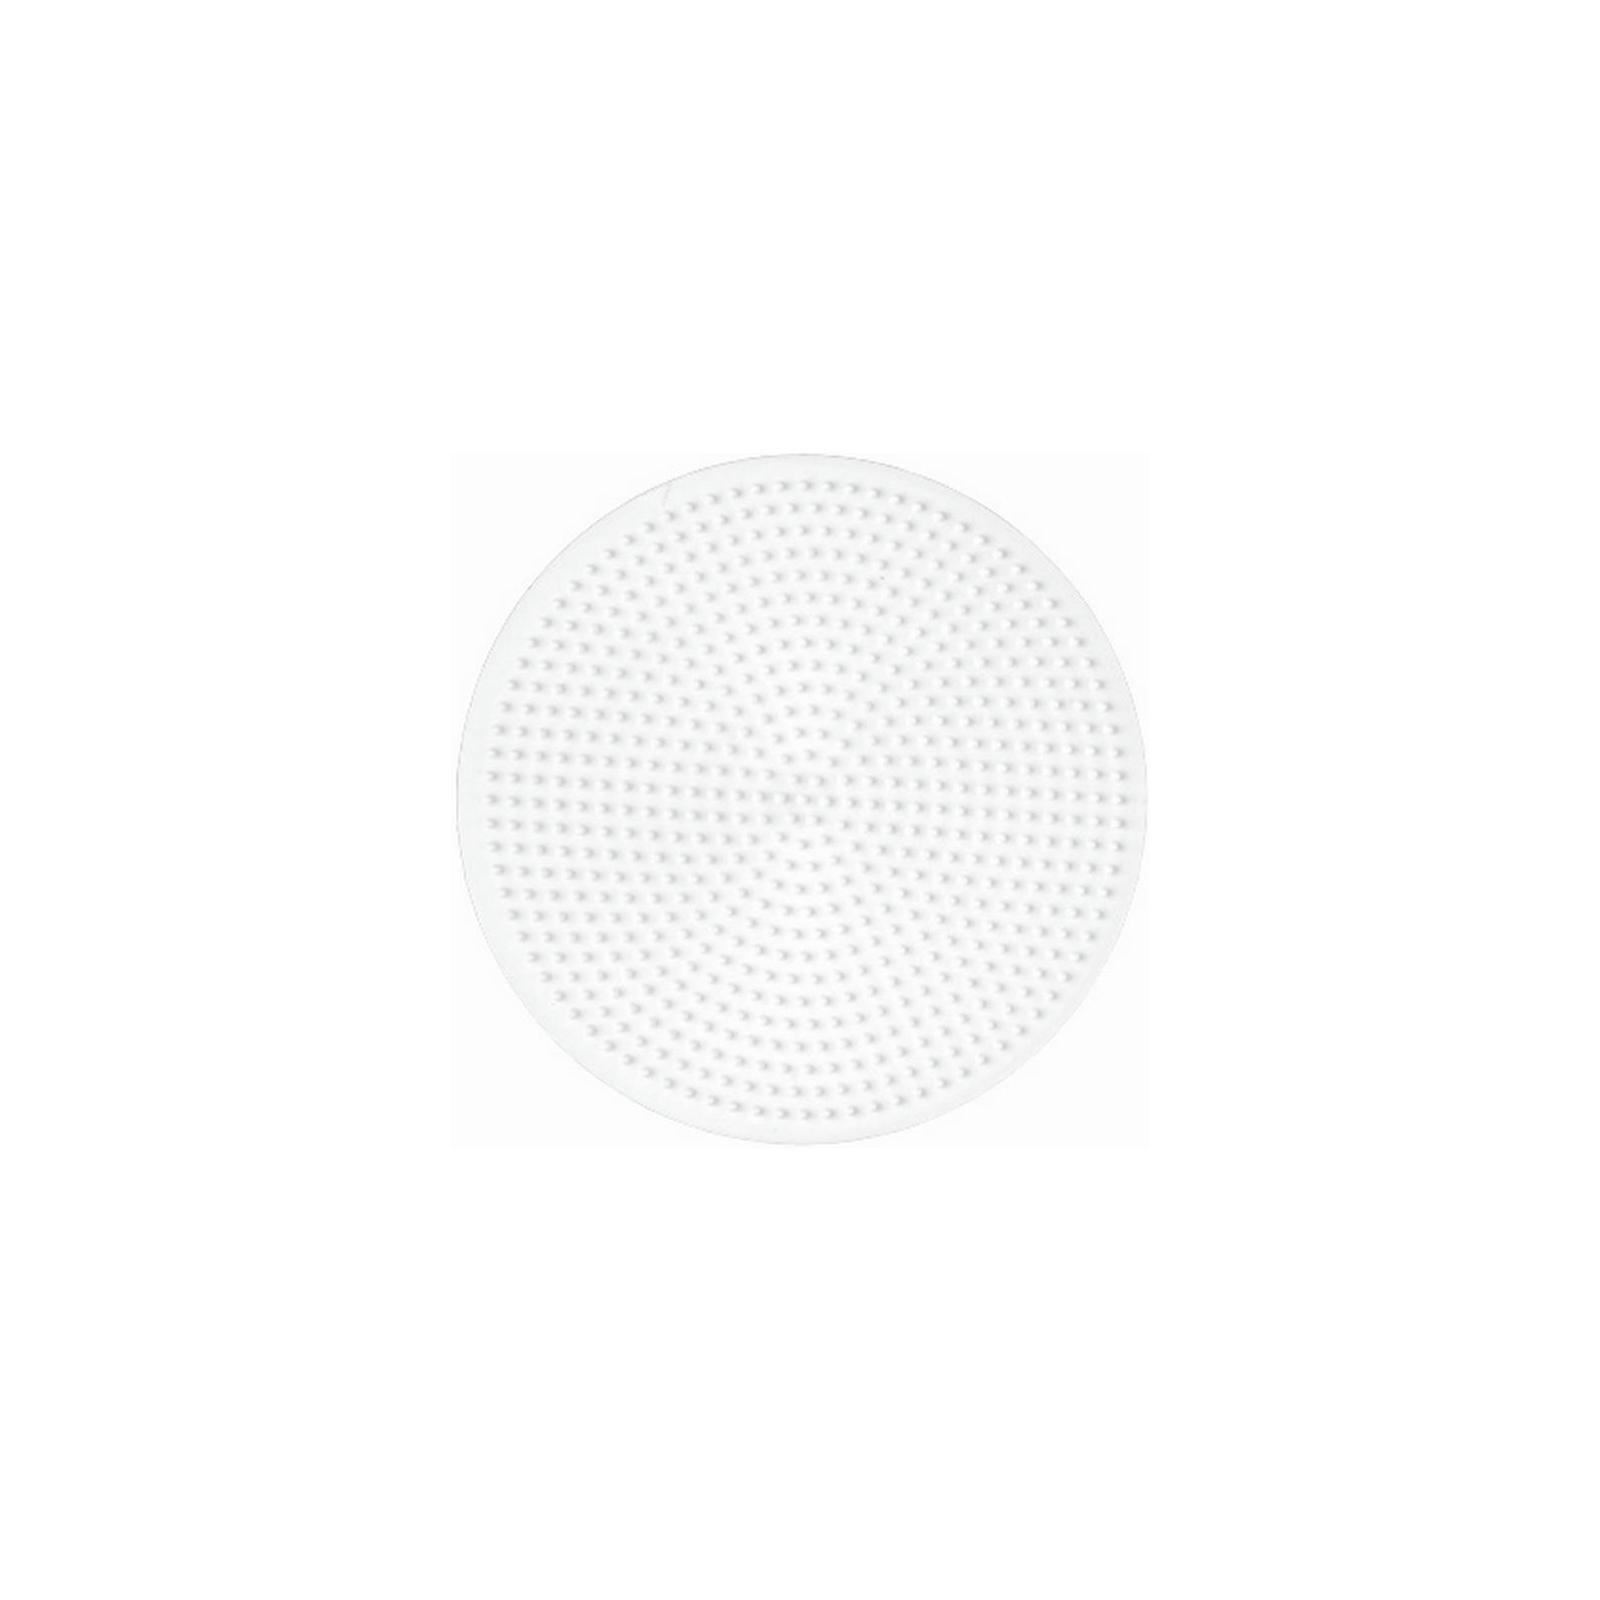 Набор для творчества Hama набор полей для термомозаики (круг, сердце, квадрат, шестиугольник) (HM-4580) изображение 3